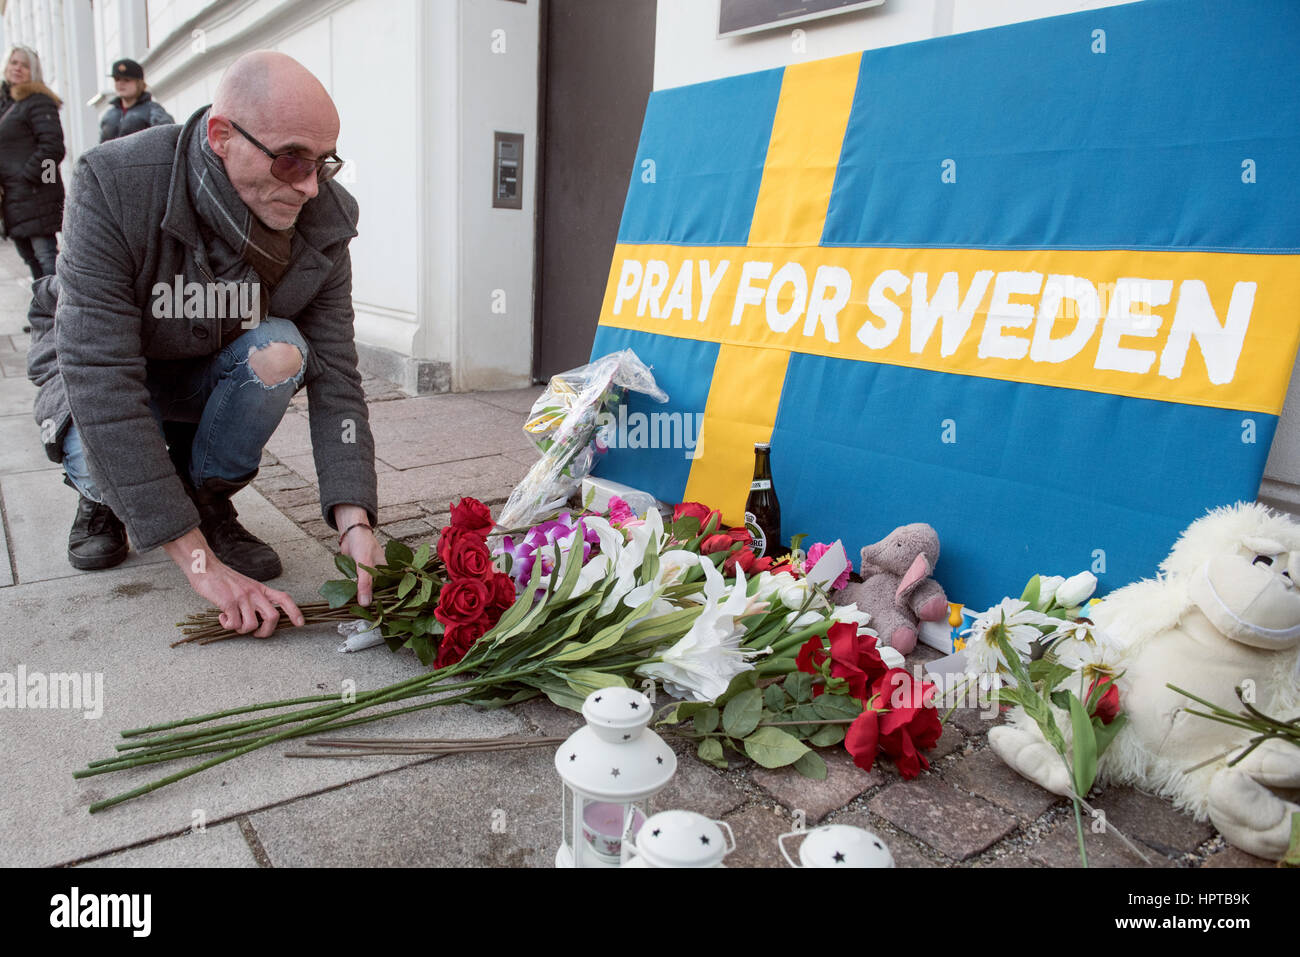 Se estima que más de 100 personas se reunieron fuera de la Embajada de Suecia en Copenhague, para participar en un simulacro de memorial para demostrar solidaridad con Suecia, a través de un evento que nunca ocurrió. La semana pasada el presidente de EEUU, Donald Trump, dijo: "Mire lo que sucedió anoche en Suecia", durante un discurso condenando la inmigración musulmana en los países occidentales. Desconcertado suecos argumentaron que la noche en cuestión fue tranquilo. Para resaltar el error, el artista danés Artpusher poniendo las flores (en la foto), organizó un simulacro de vigilia. Foto de stock